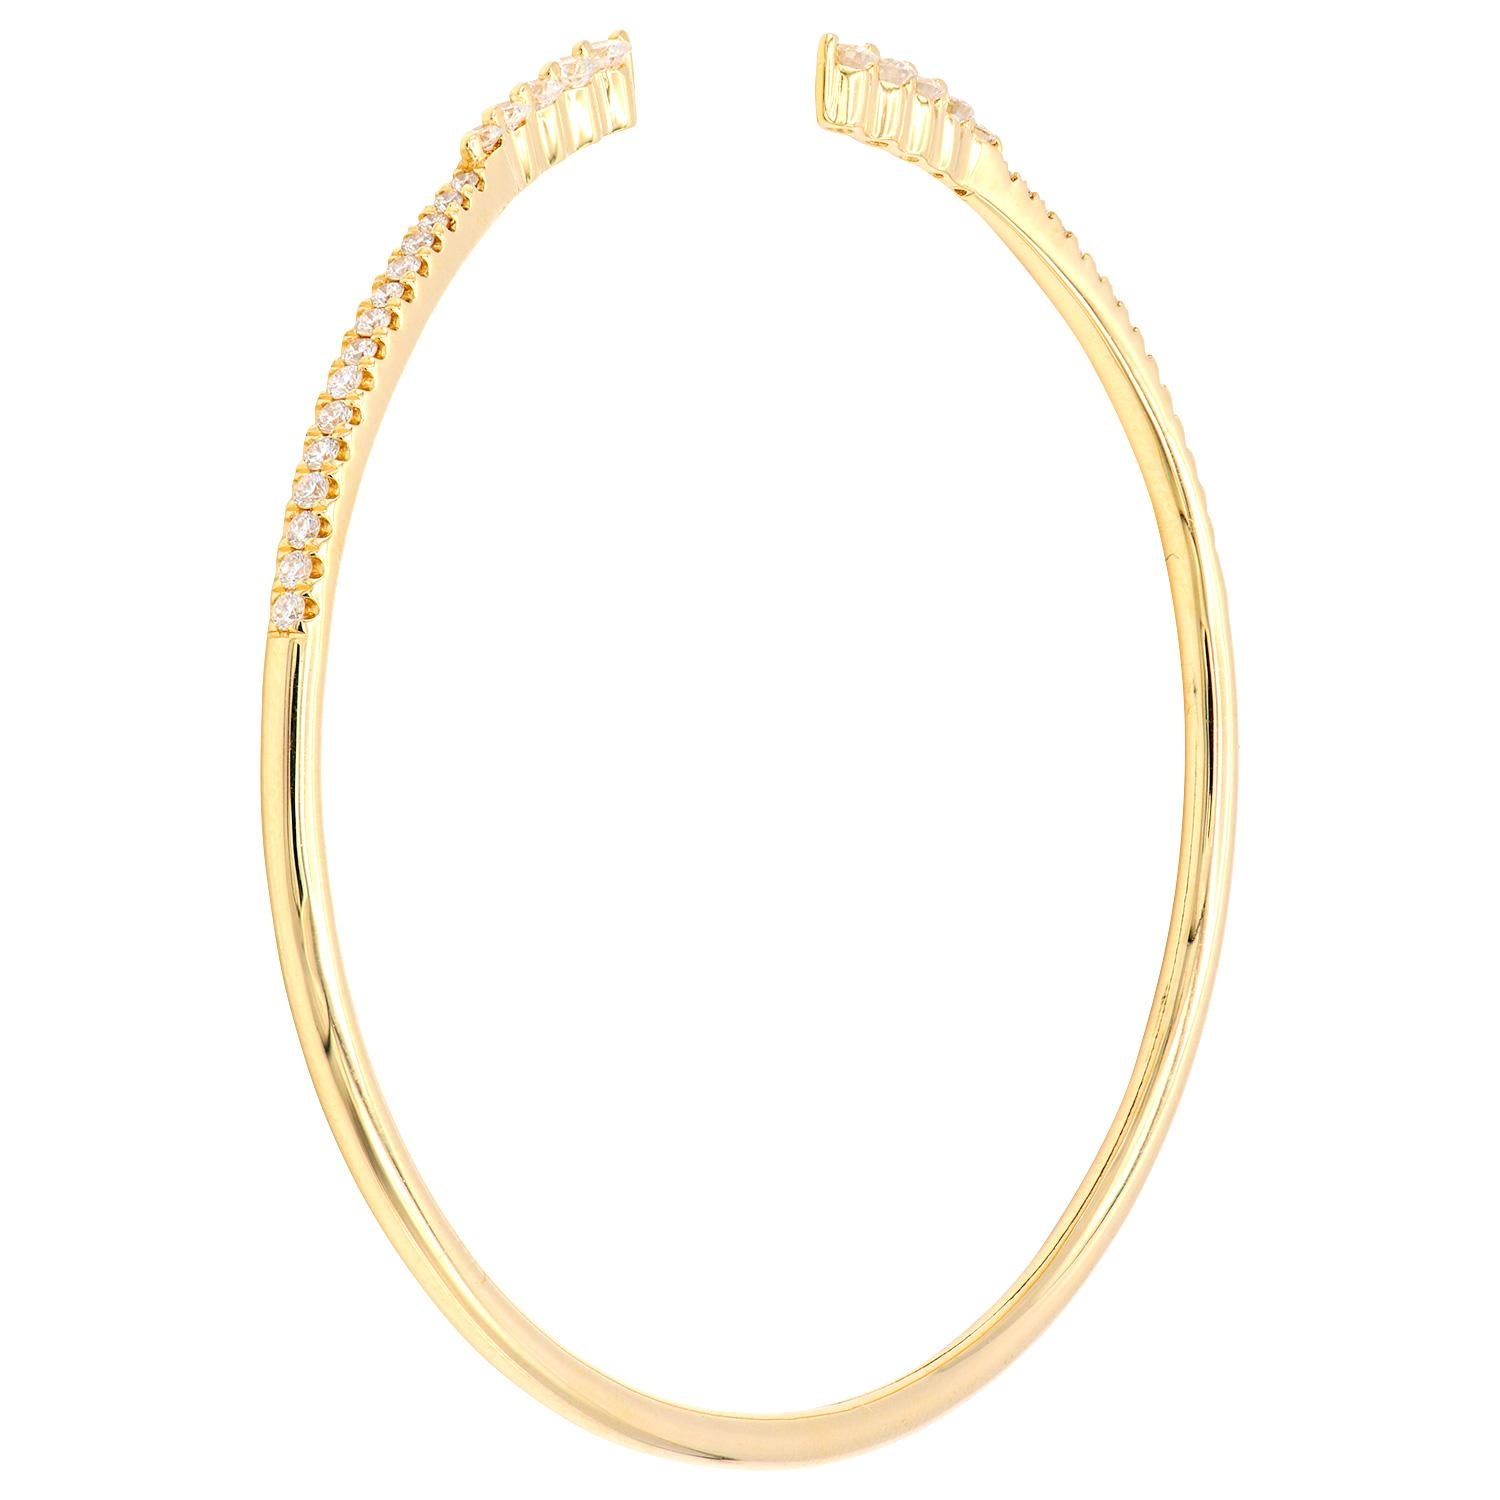 Avec cet exquis bracelet en diamants, le style et le glamour sont à l'honneur. Ce bracelet flexible en or jaune 14 carats est composé de 4,2 grammes d'or. Le sommet est orné d'une rangée de diamants de couleur GH, SI1-0SI2, composée de 40 diamants